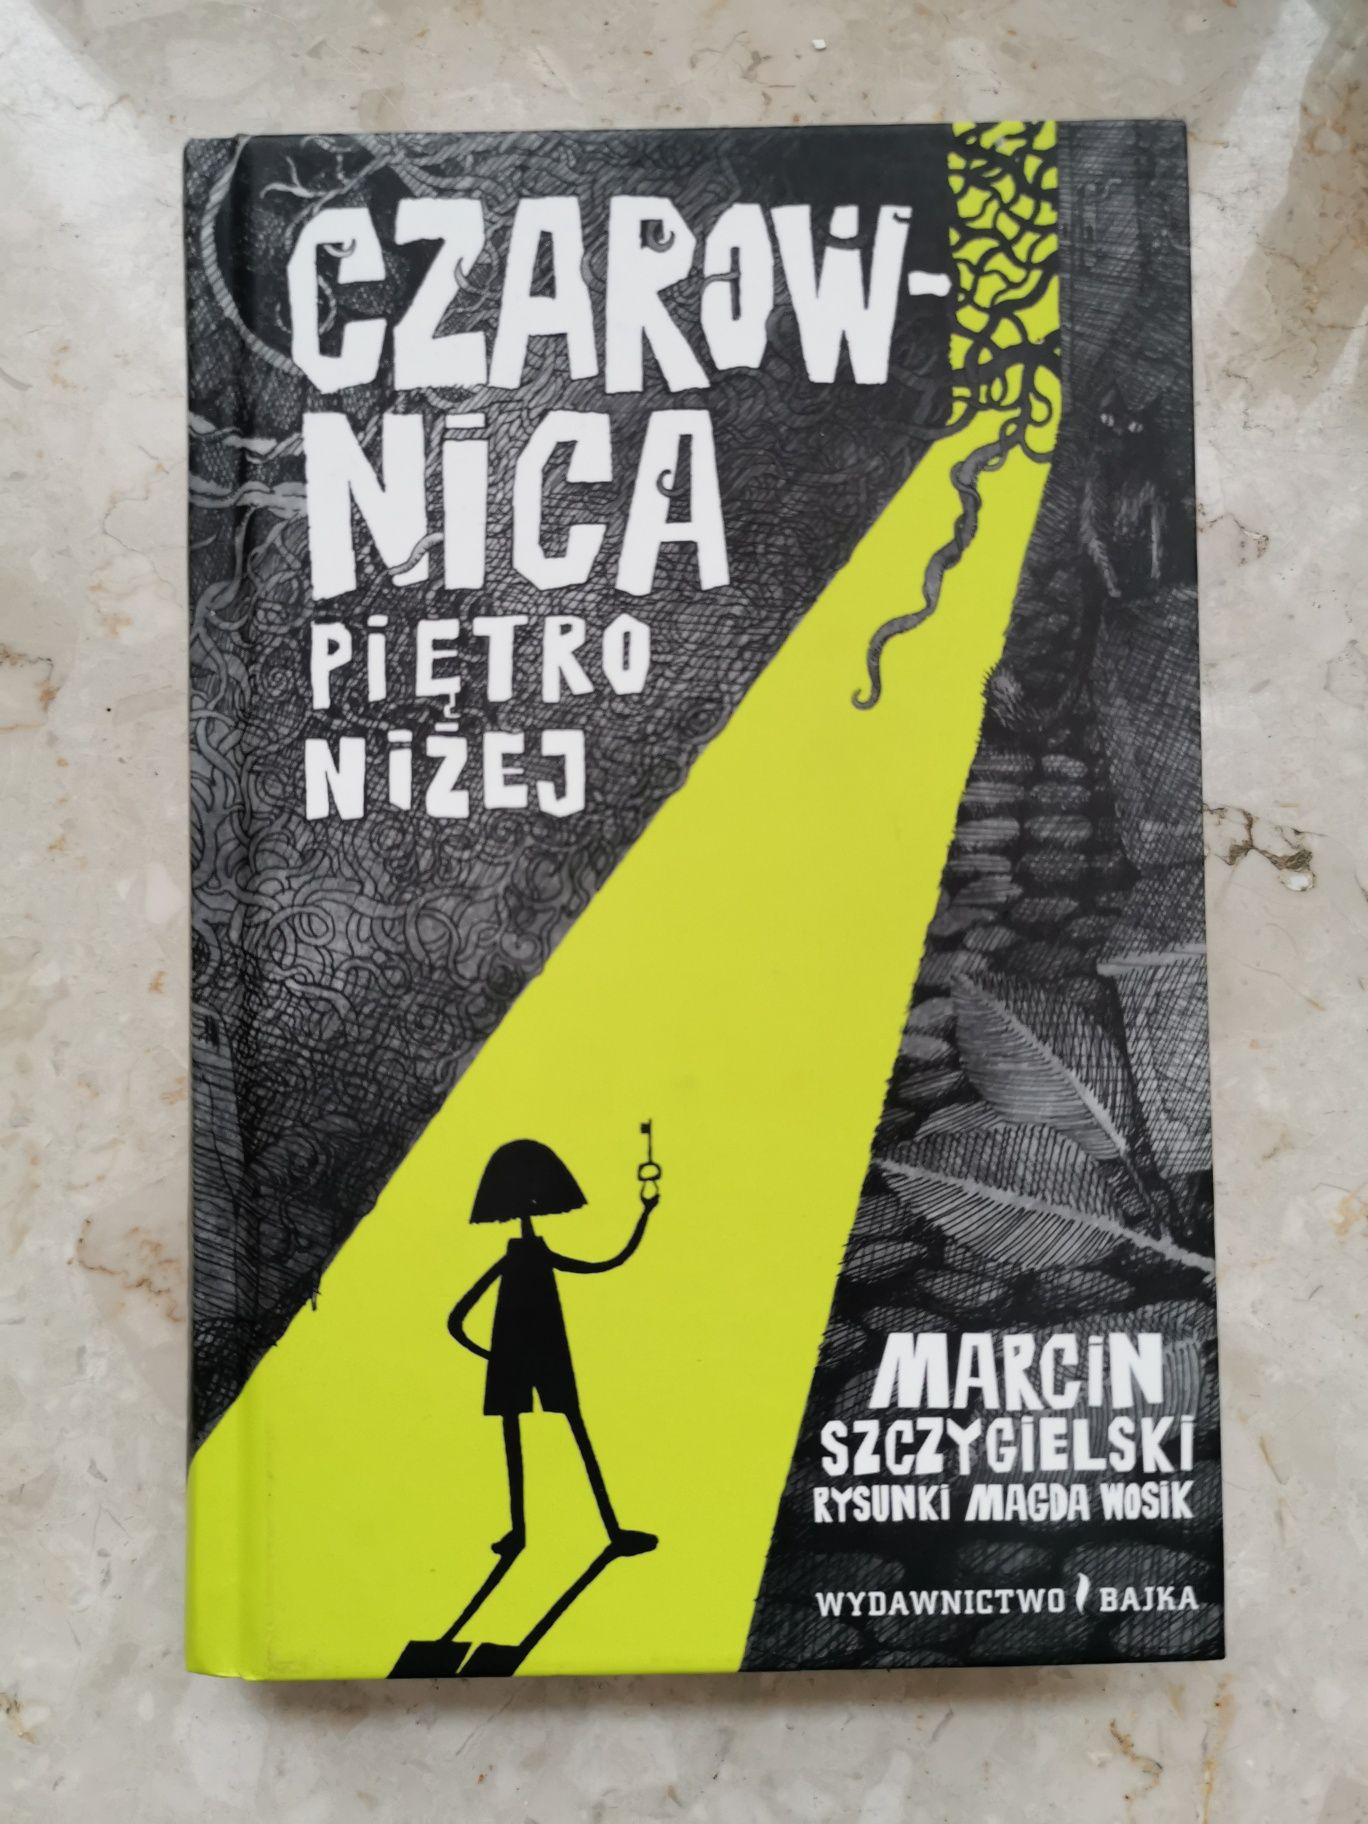 Czarownica piętro niżej - Marcin Szczygielski